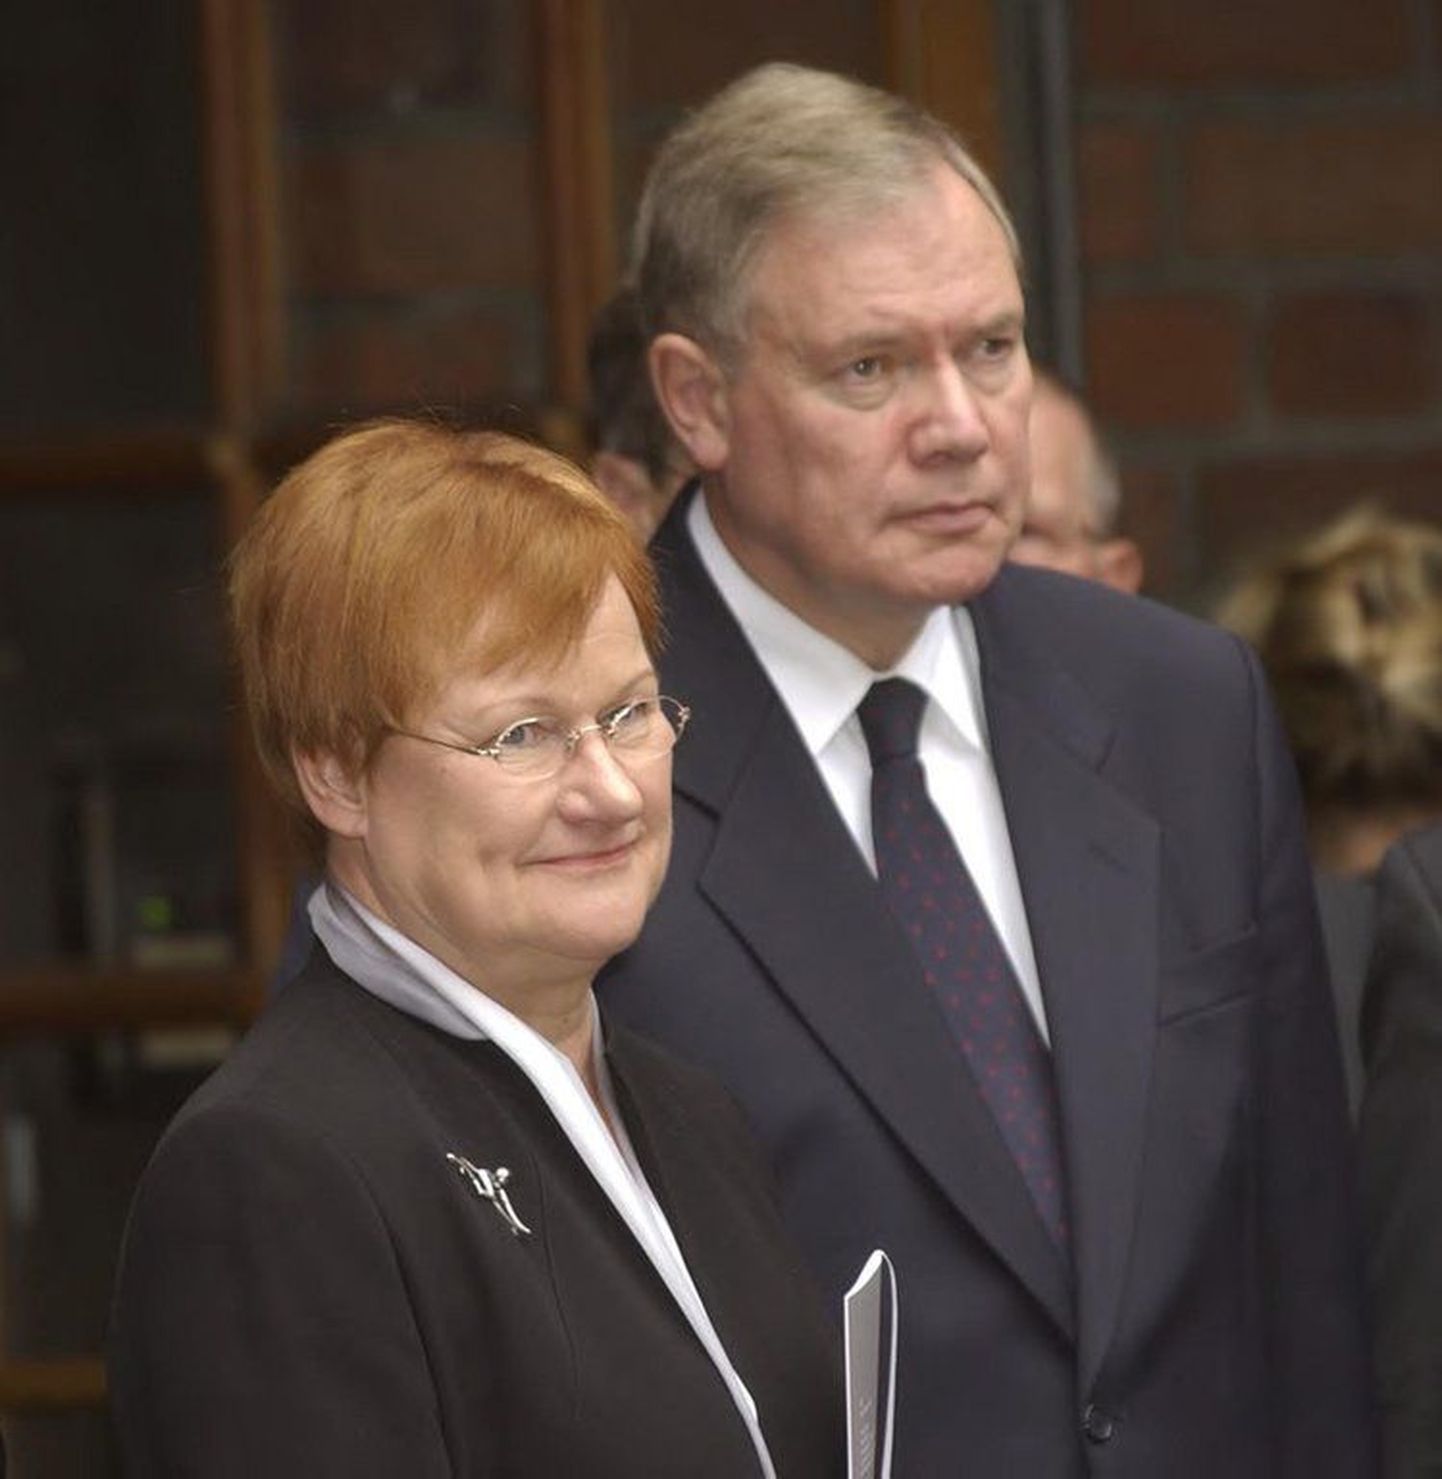 Soome president Tarja Halonen ja tollane parlamendispiiker Paavo Lipponen viie aasta eest (2003) tehtud fotol.